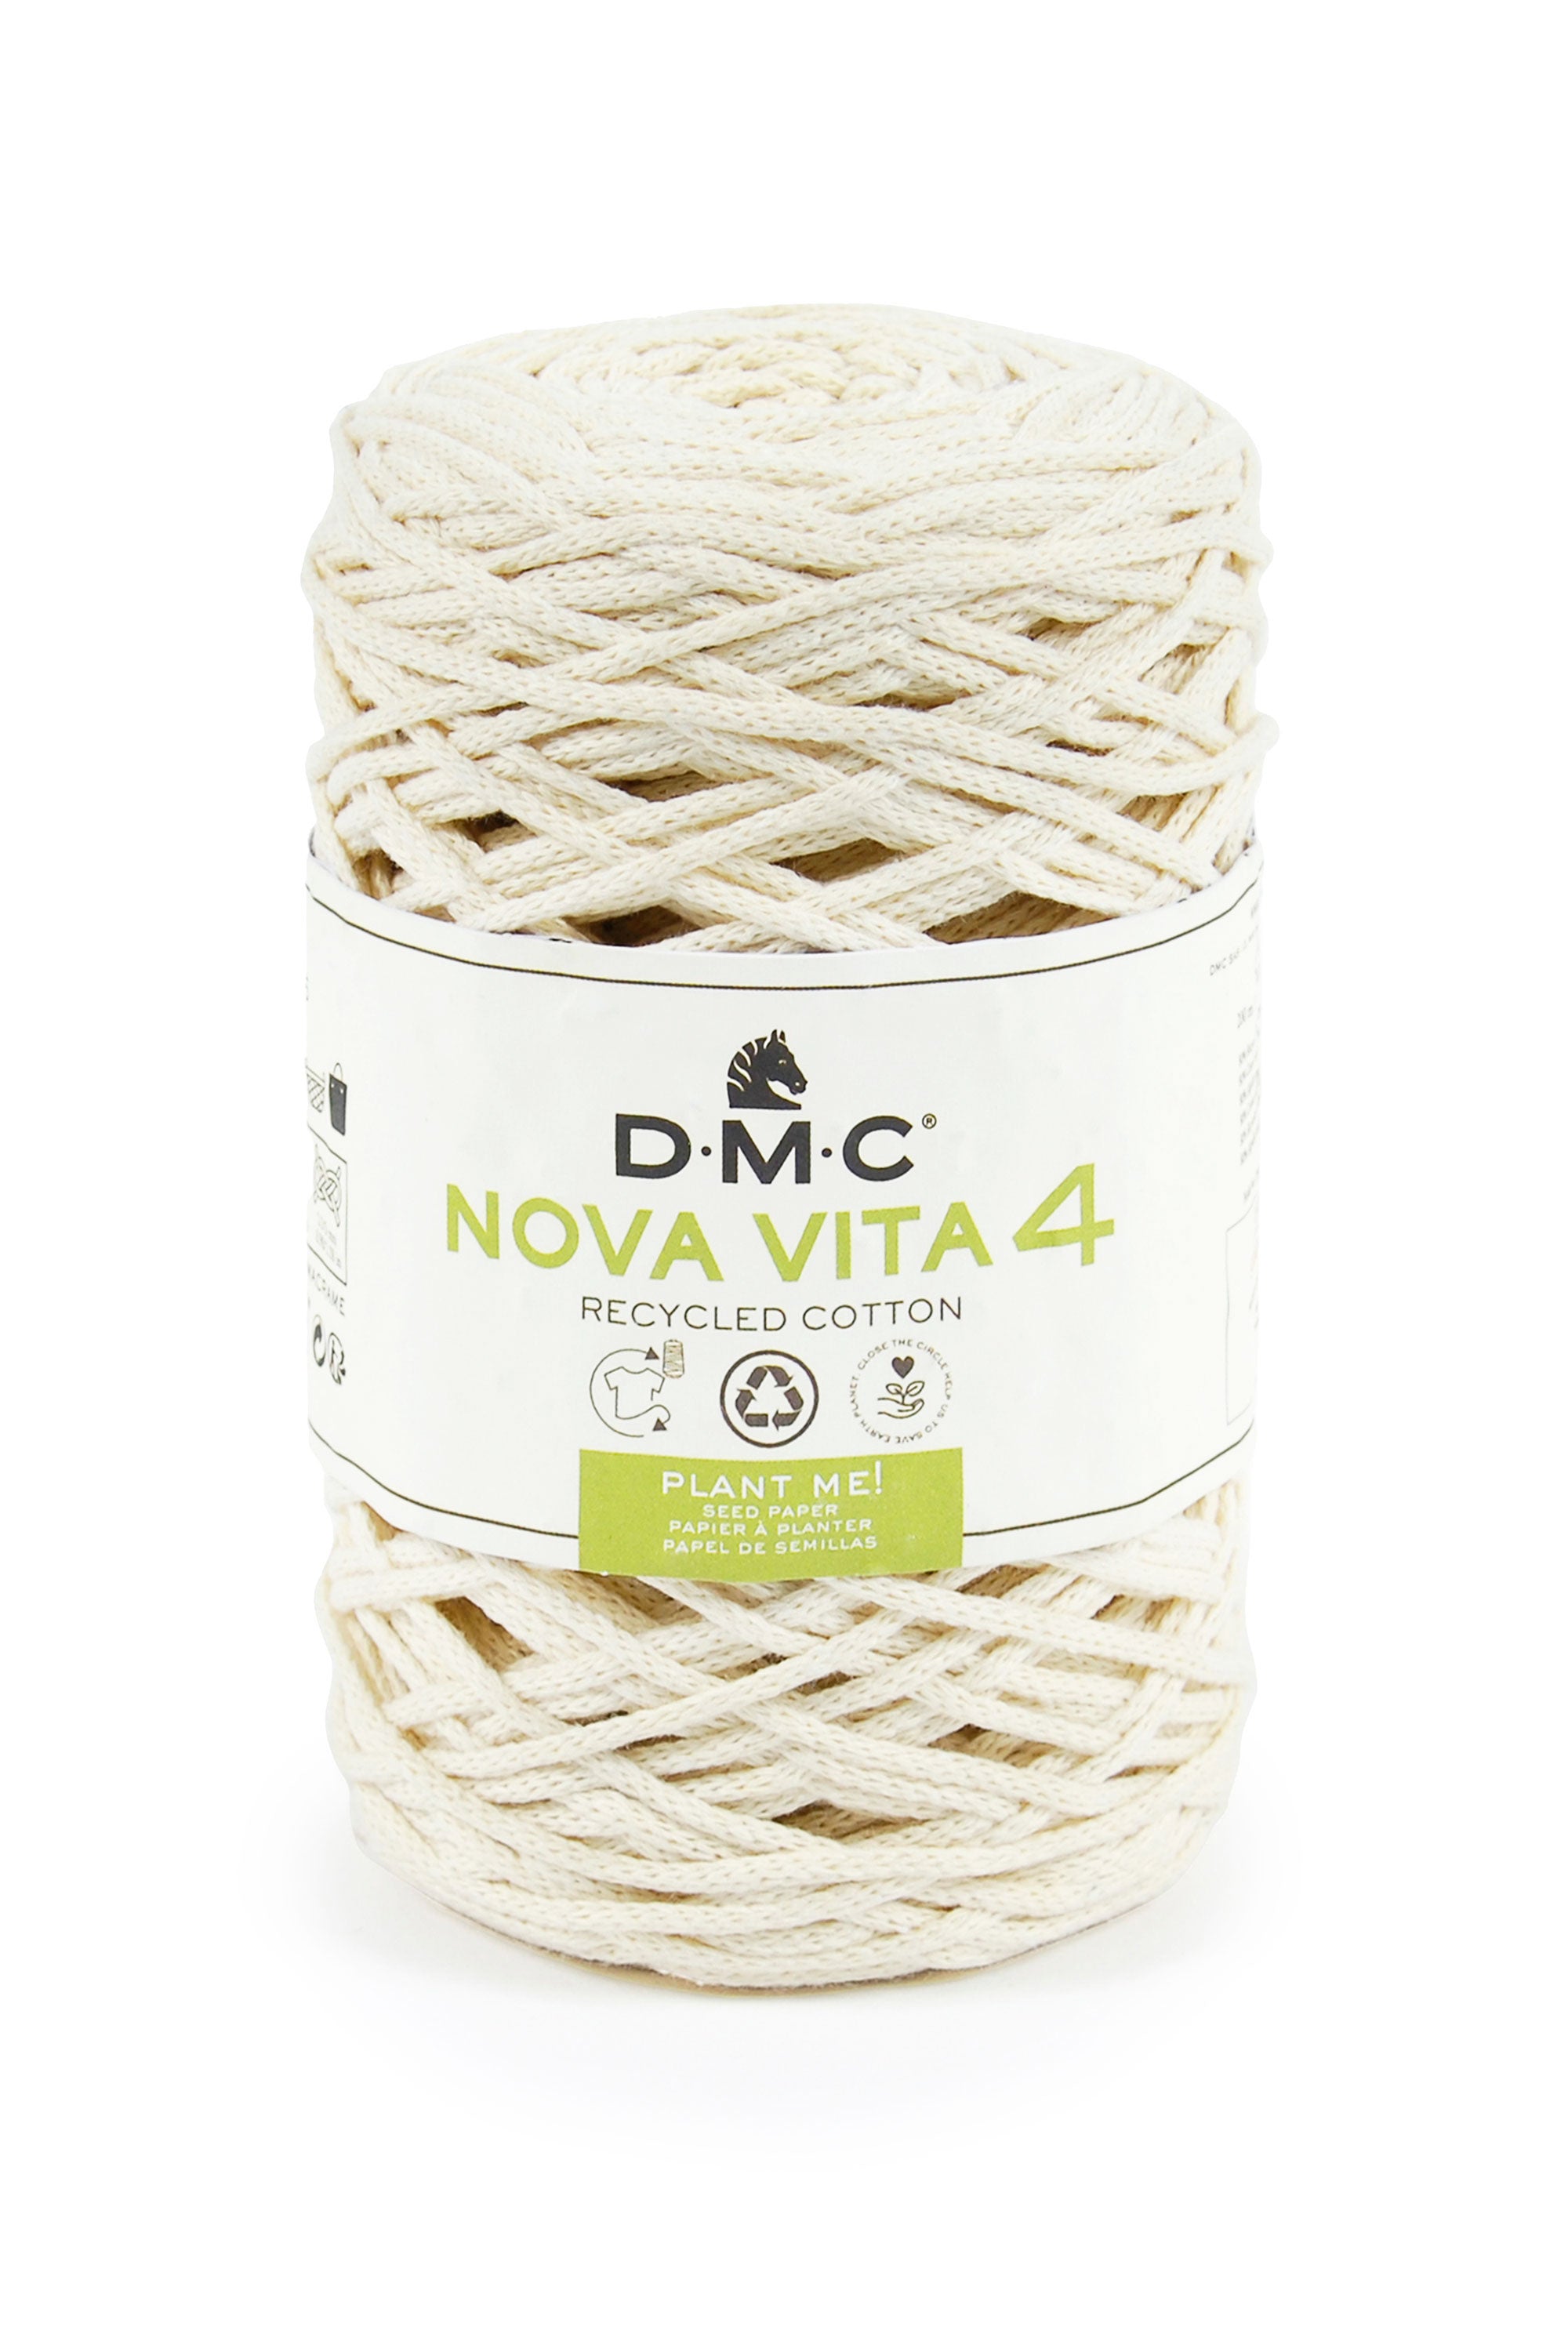 DMC Nova Vita 4 - Crochet, Tricot and Macrame threads